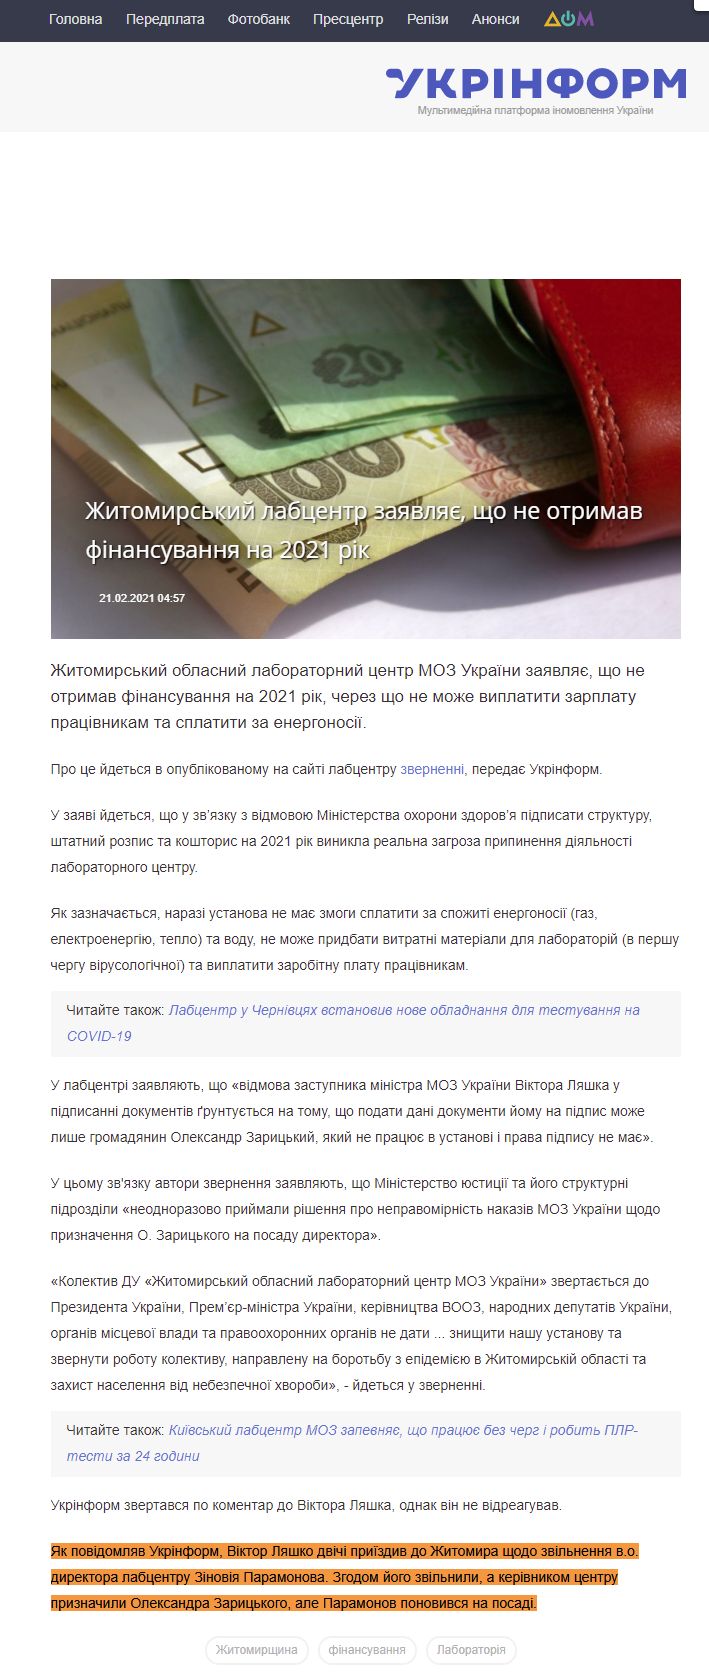 https://www.ukrinform.ua/rubric-regions/3194592-zitomirskij-labcentr-zaavlae-so-ne-otrimav-finansuvanna-na-2021-rik.html